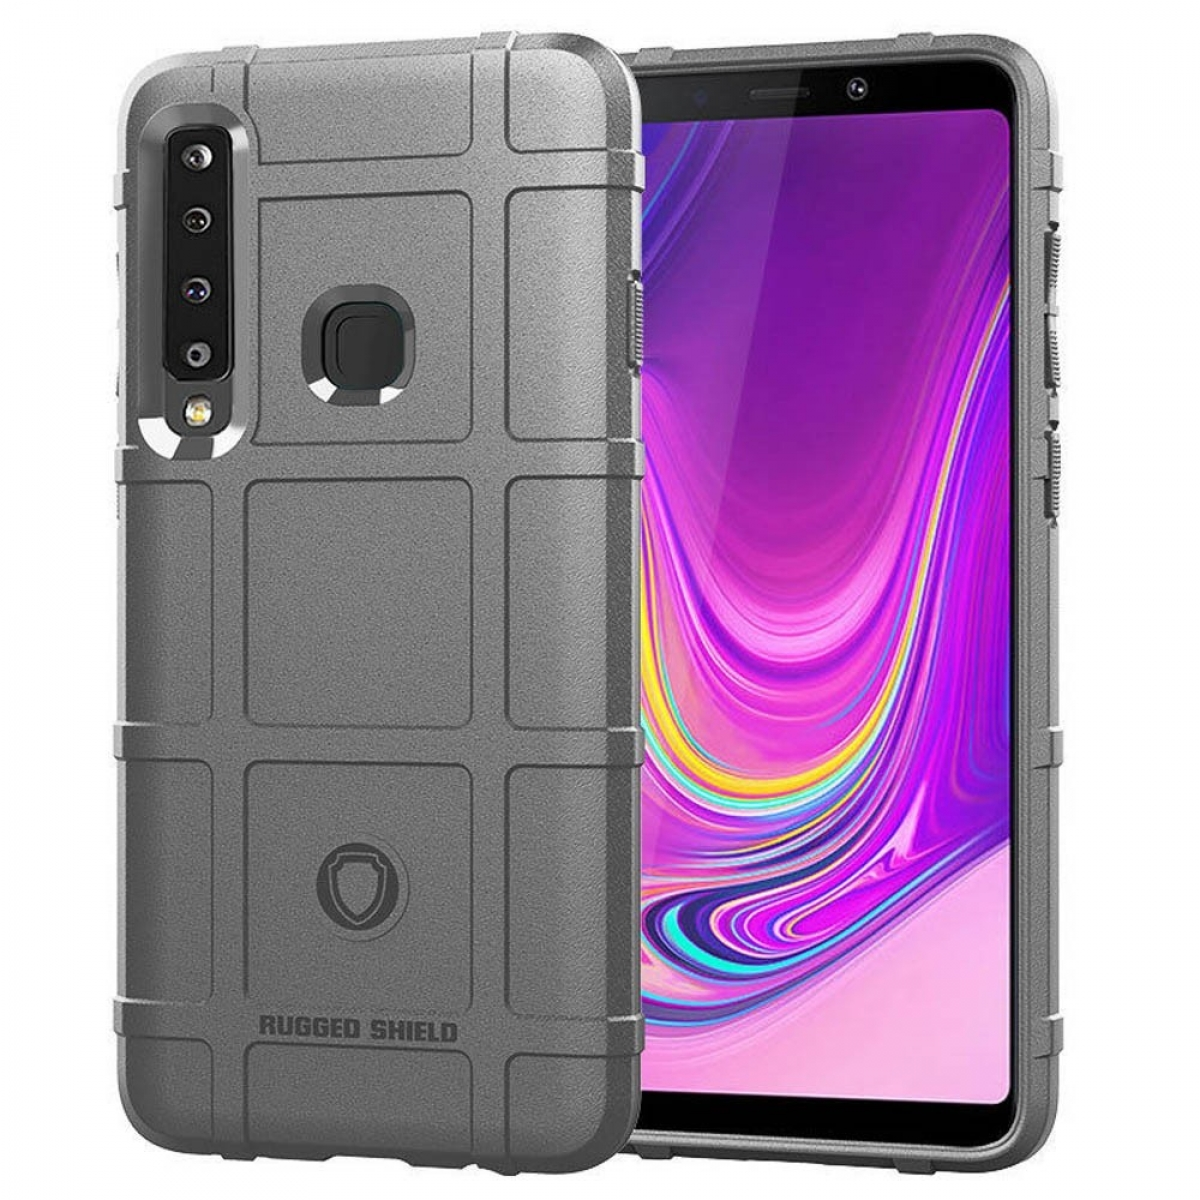 Samsung, CASEONLINE (2018), A9 - Rugged Galaxy Backcover, Grau Grau,